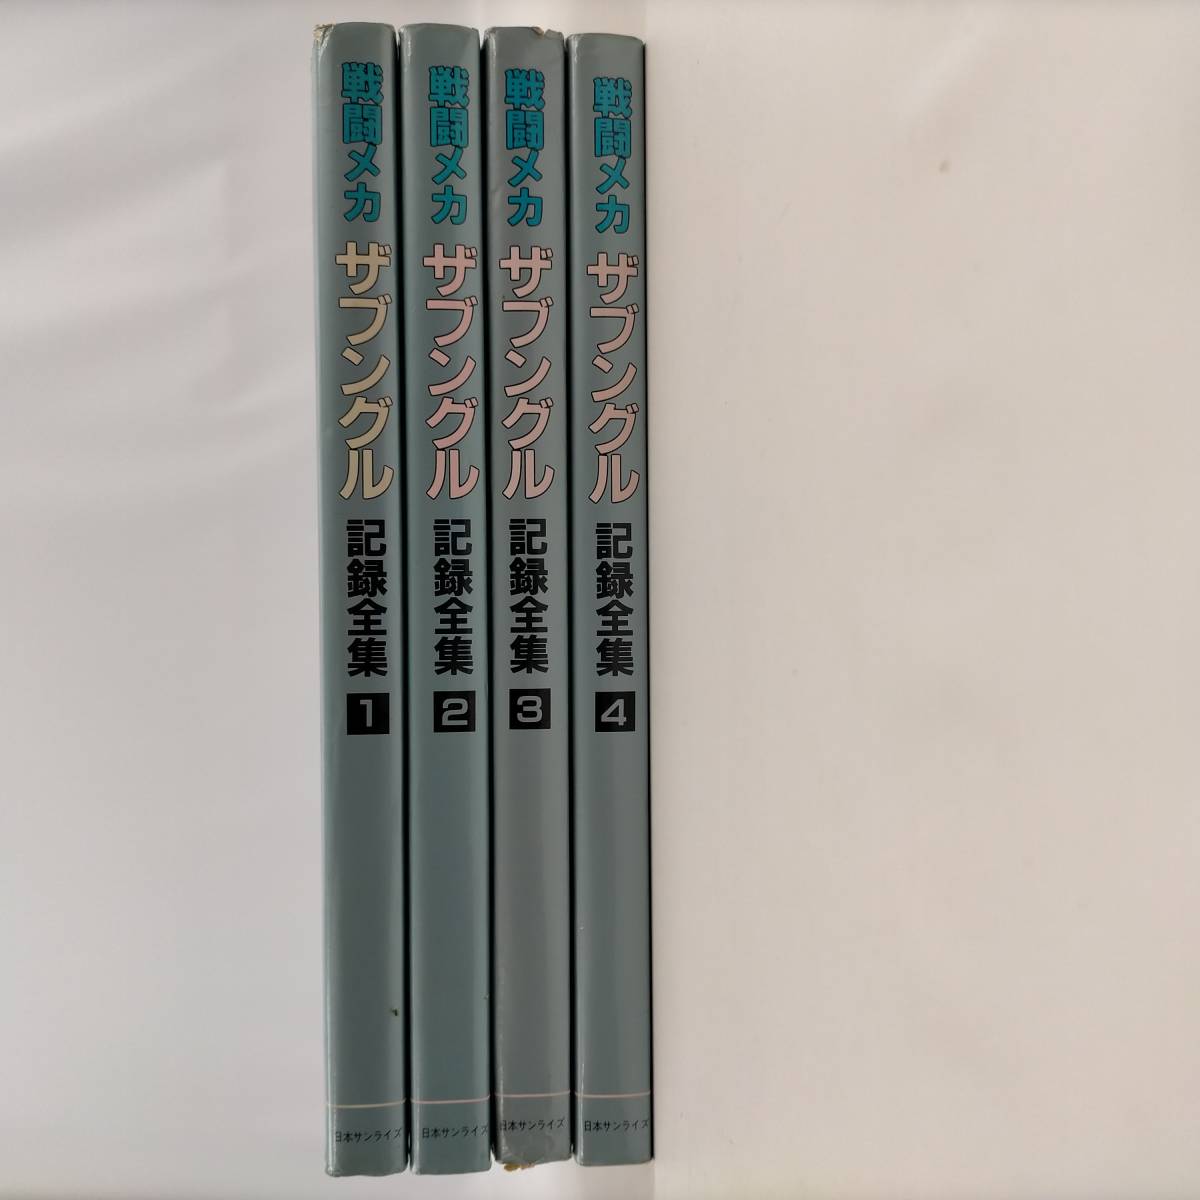 戦闘メカ ザブングル 記録全集 全4巻セット －日本代購代Bid第一推介